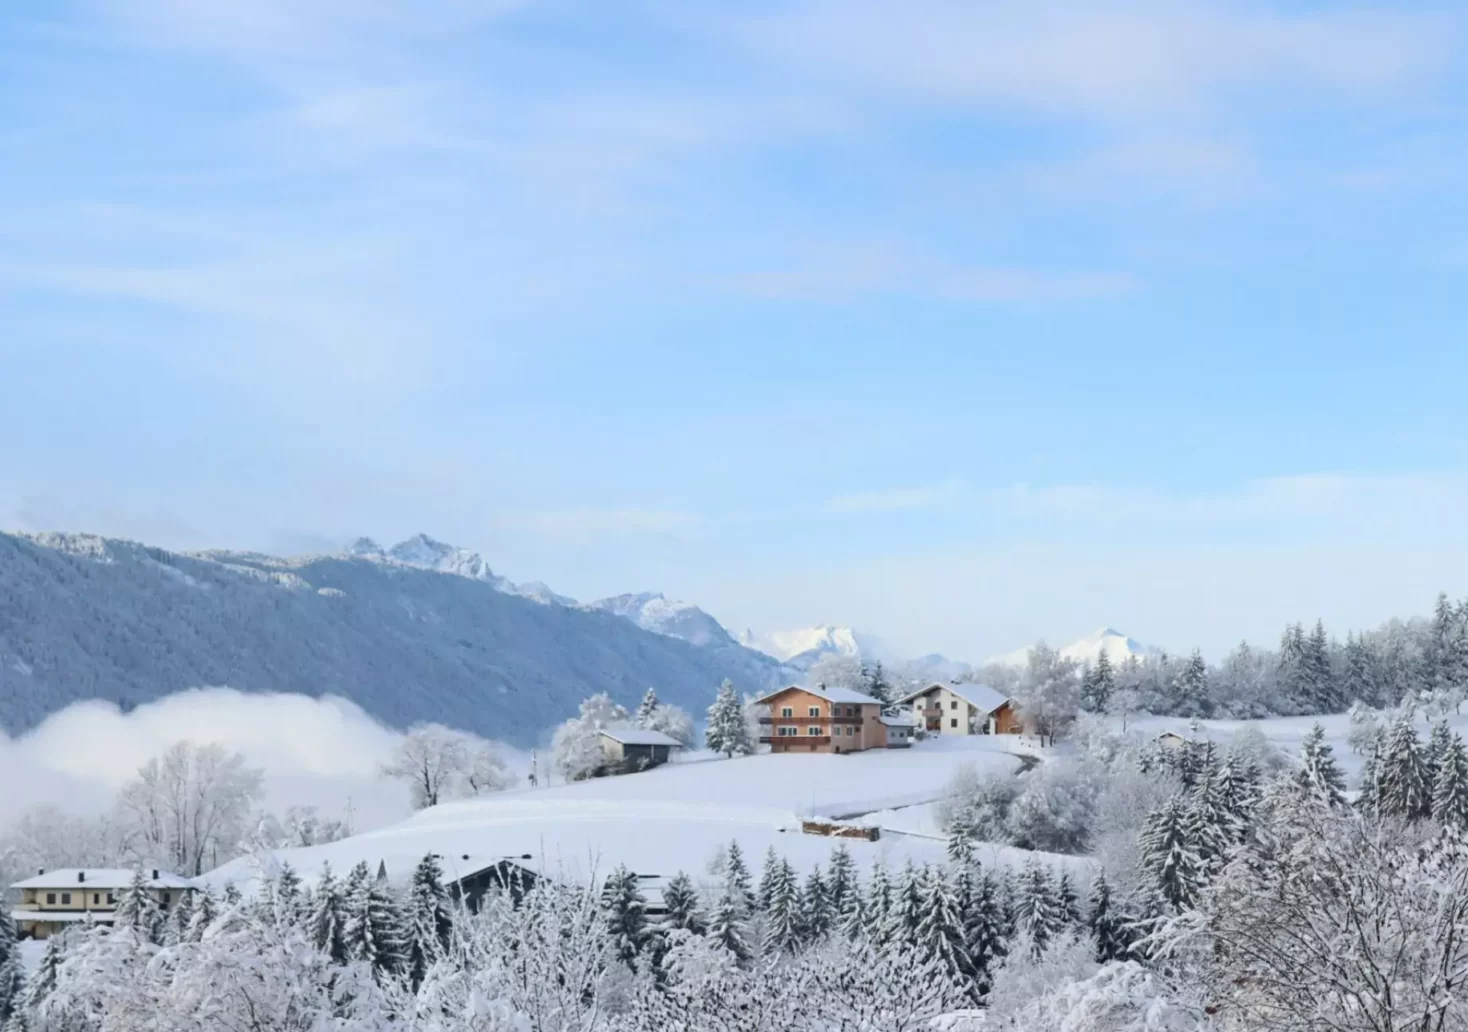 Ein Bild auf 5min.at zeigt eine verschneite Ortschaft in Kärnten. Der Himmel ist strahlend blau.